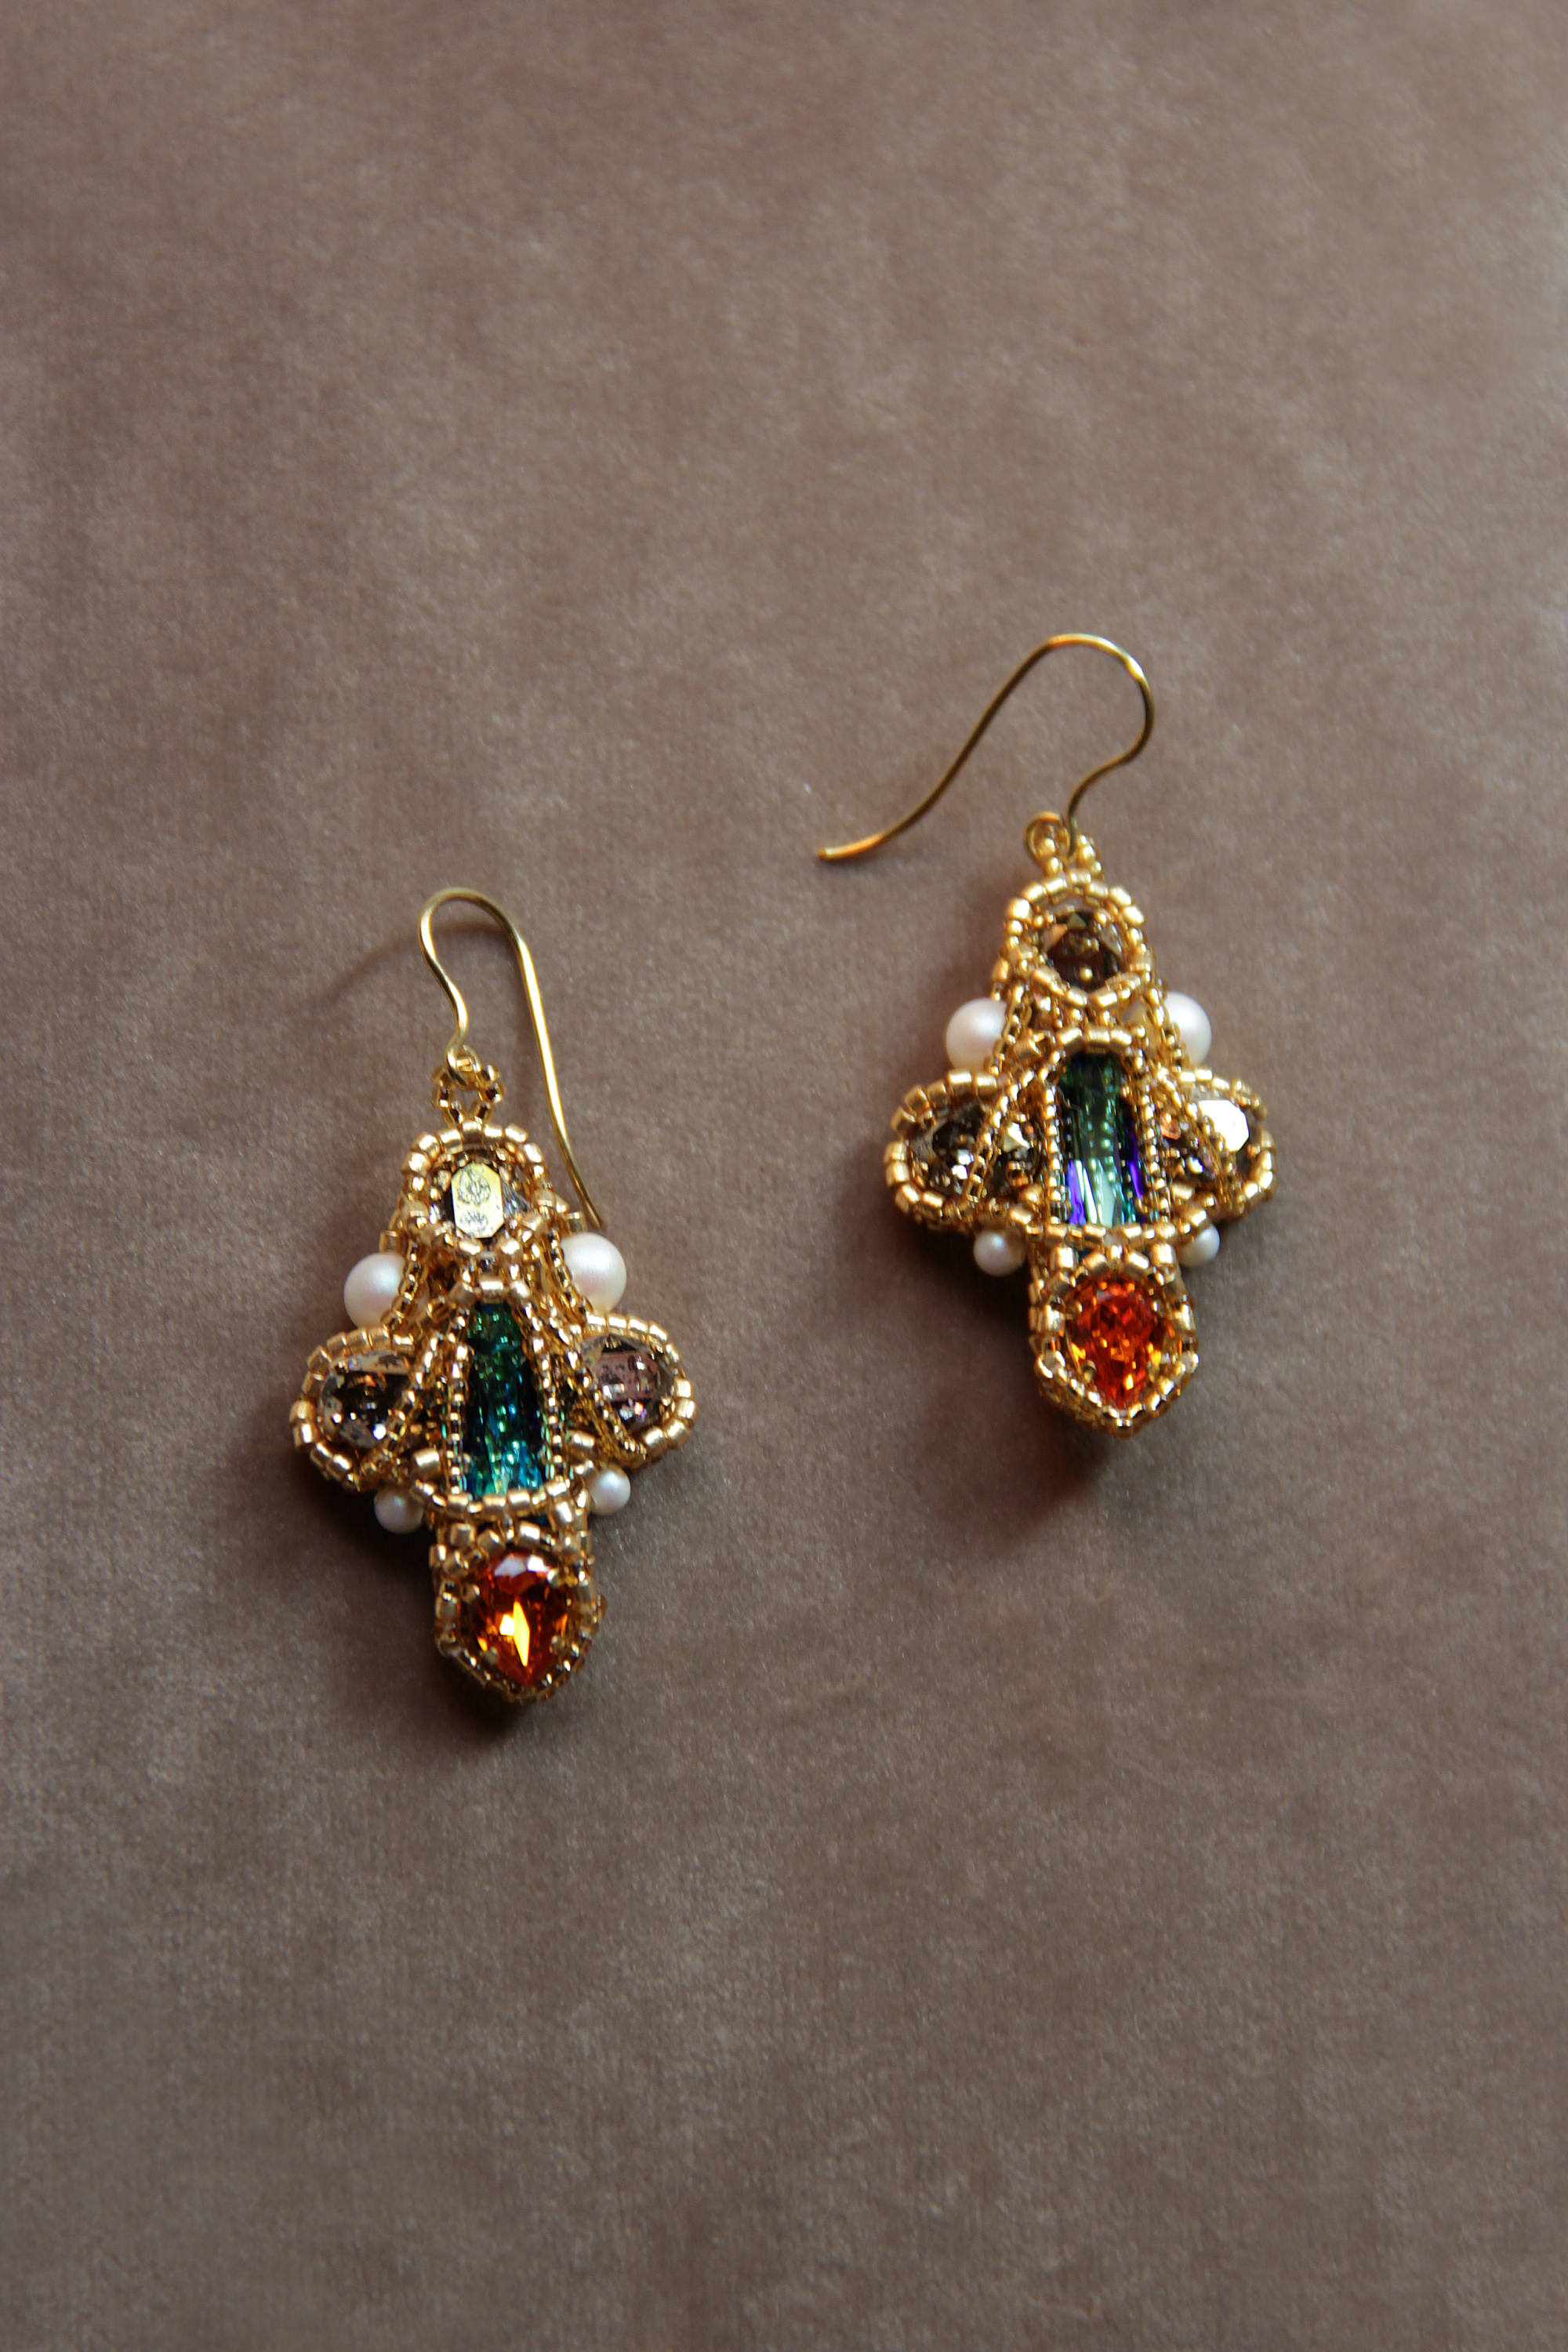 Small cross earrings Antique dangle cross earrings Rhinestone | Etsy